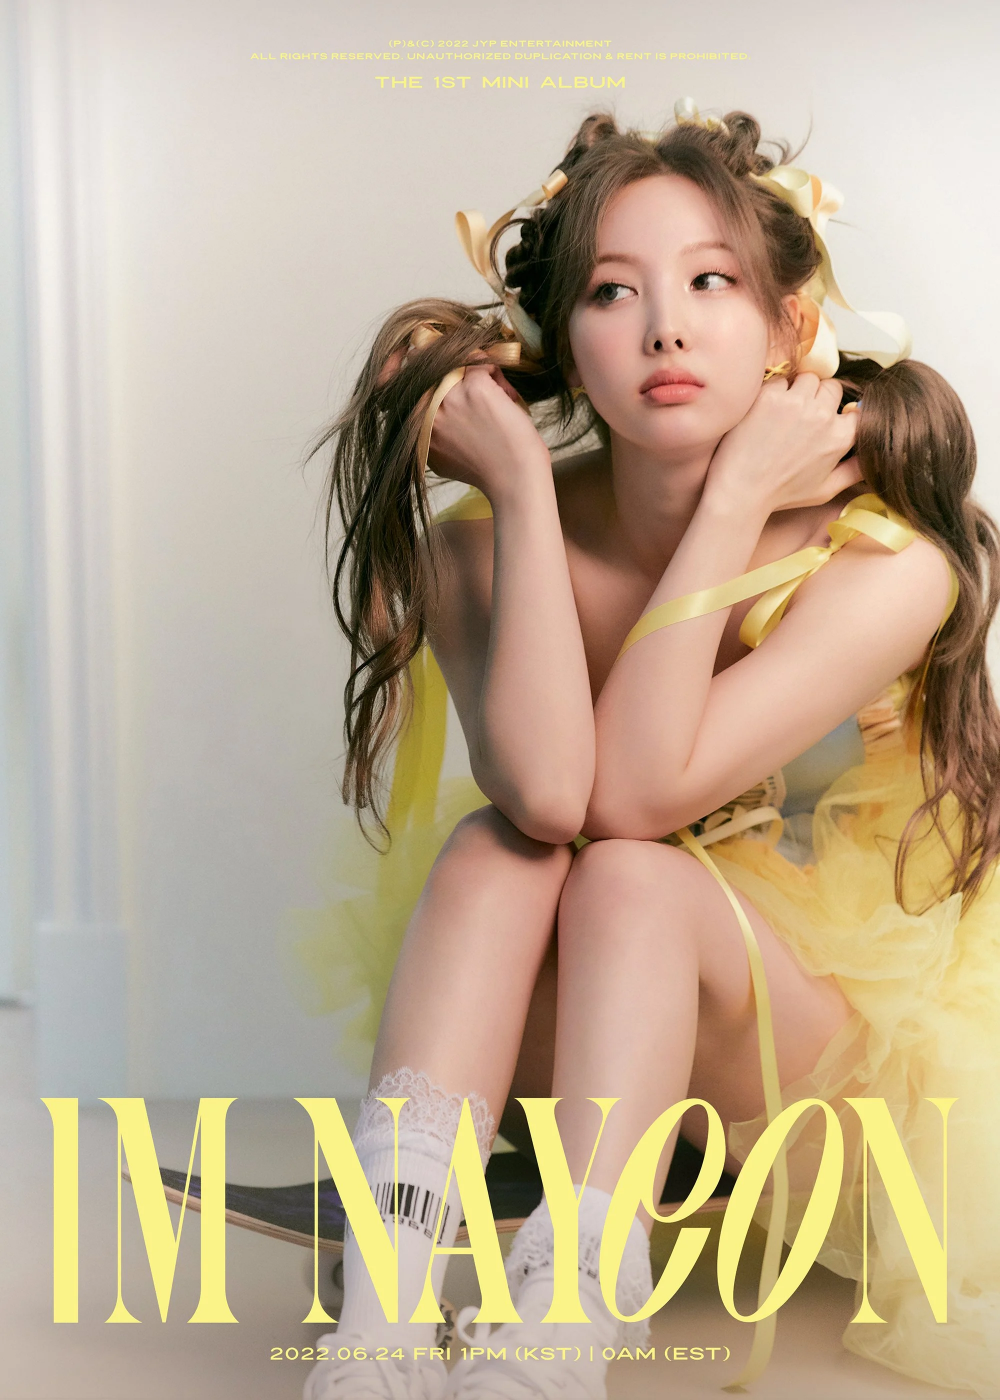 [Соло-дебют] Наён из TWICE мини-альбом «IM NAYEON»: дуэт-превью "NO PROBLEM" (feat. Феликс из Stray Kids)